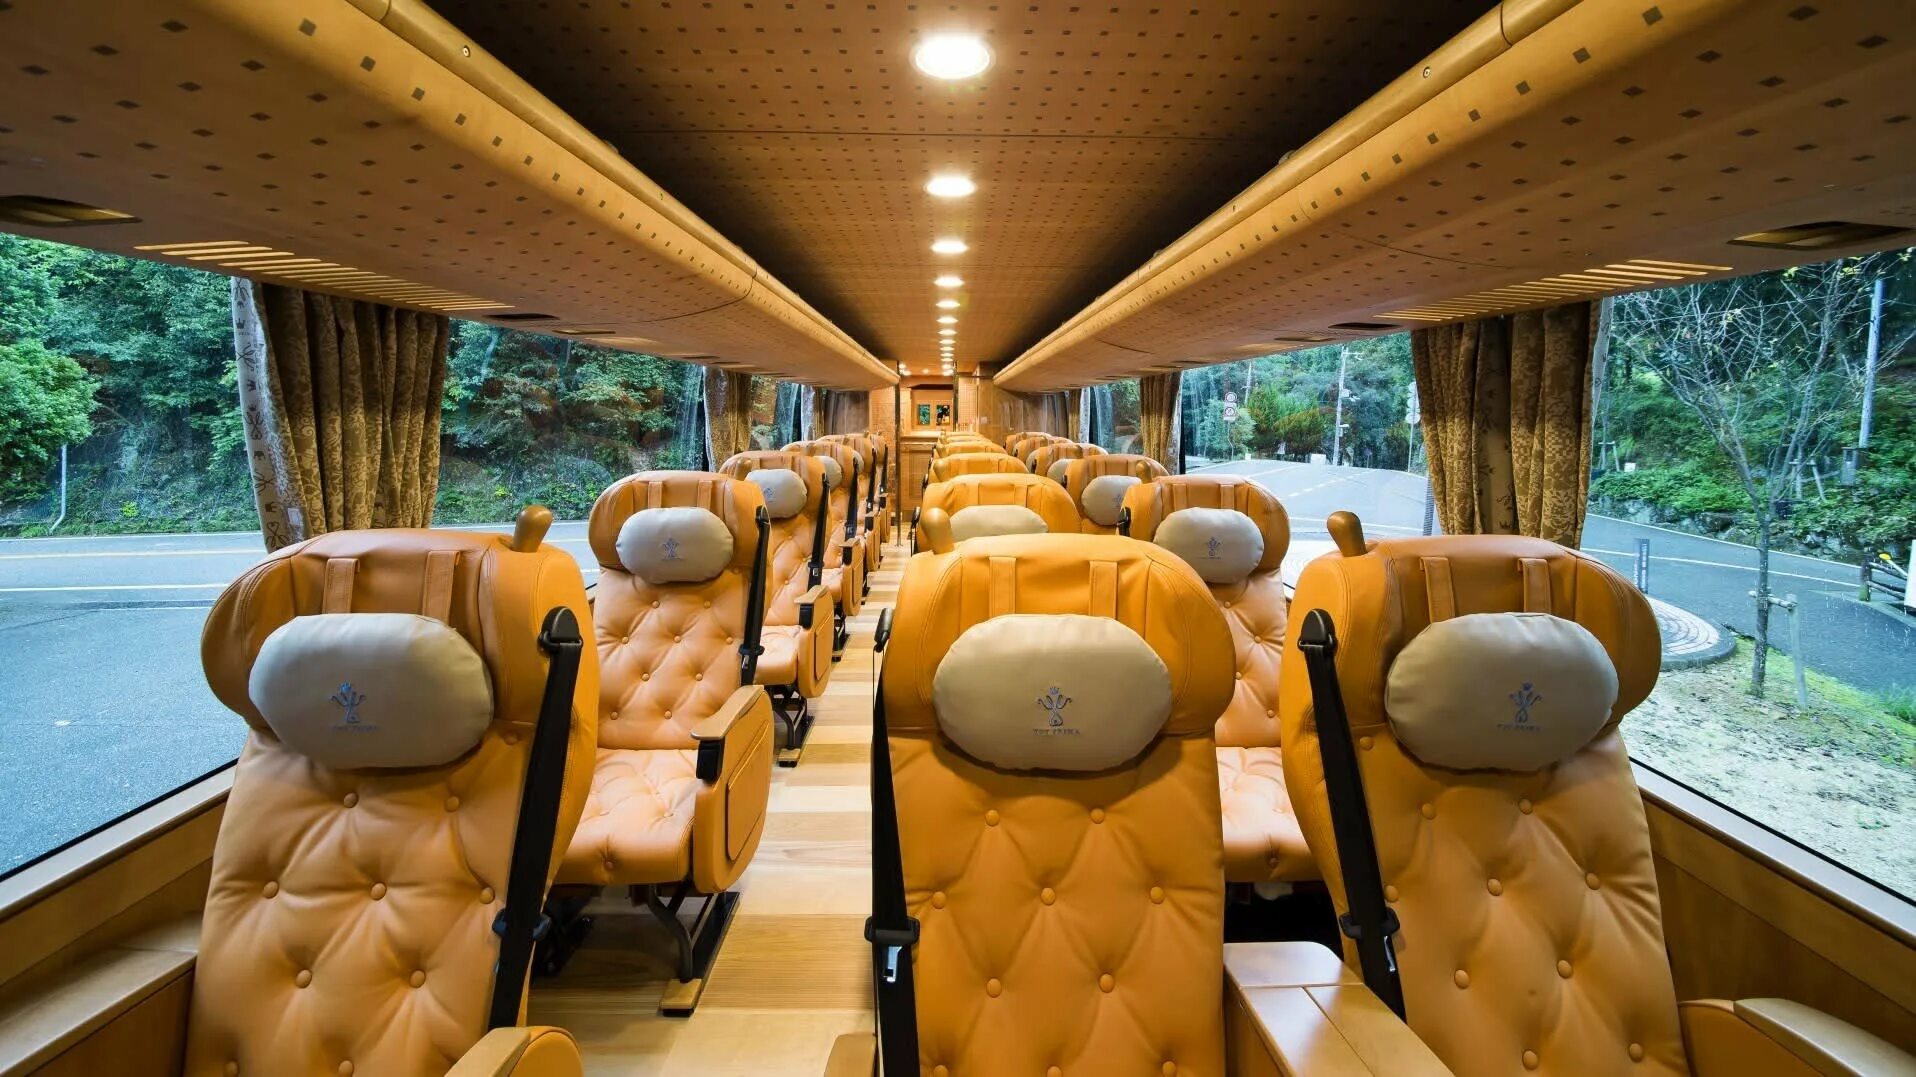 Комфортабельный автобус. Автобус для путешествий. Комфортабельный автобус внутри. Туристический автобус внутри.